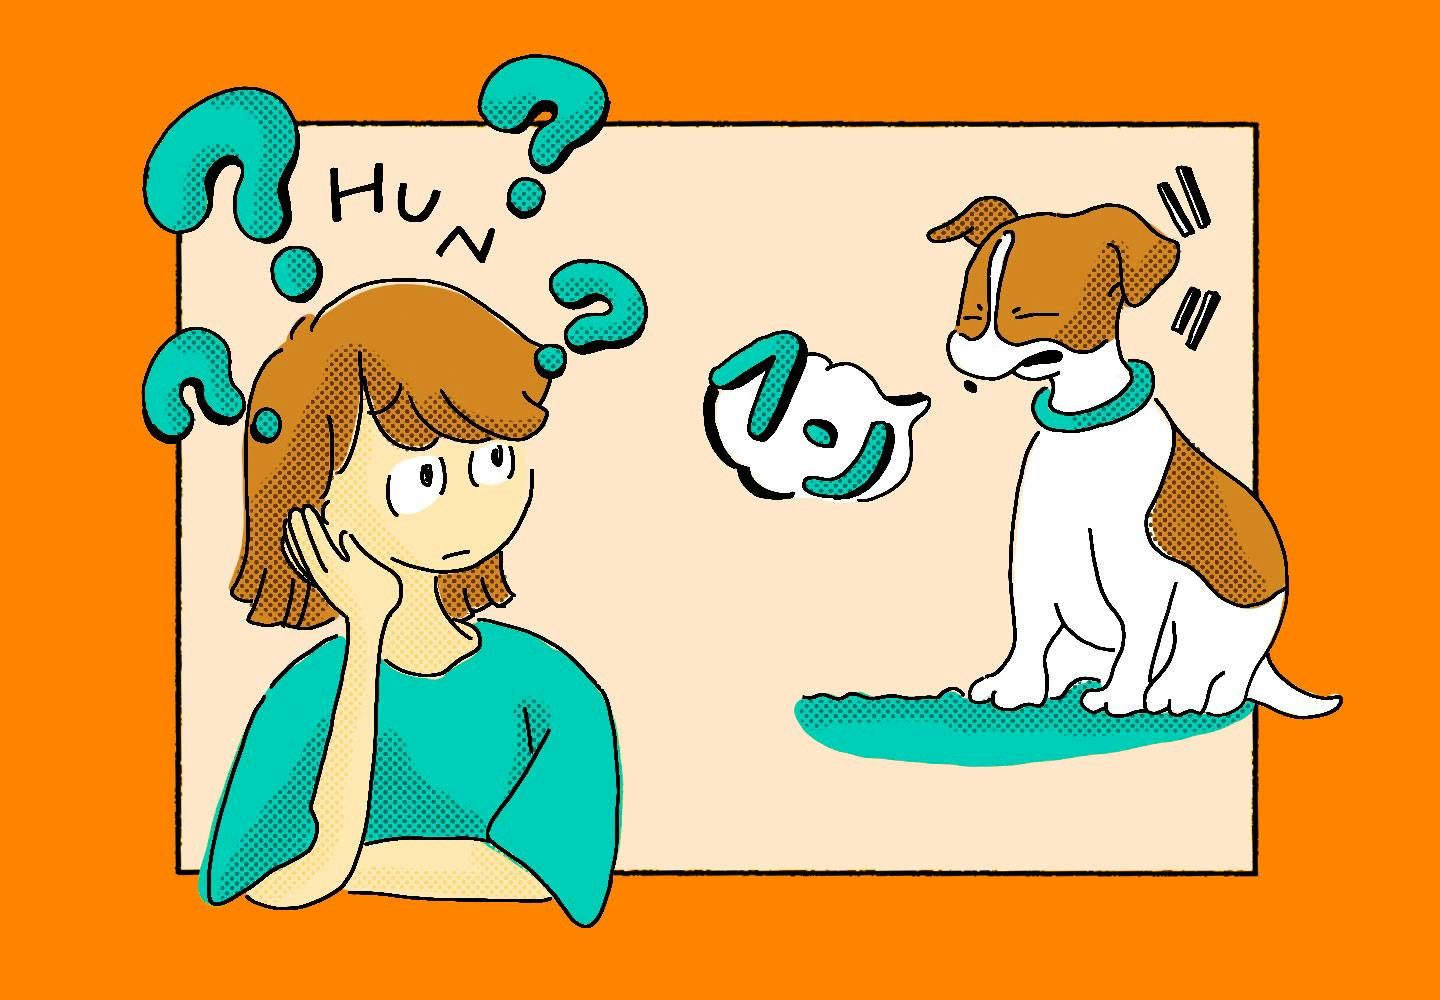 獣医師監修 犬の鳴き声には理由がある 鳴き方で分かる気持ちと しつけや対処法について解説 わんクォール